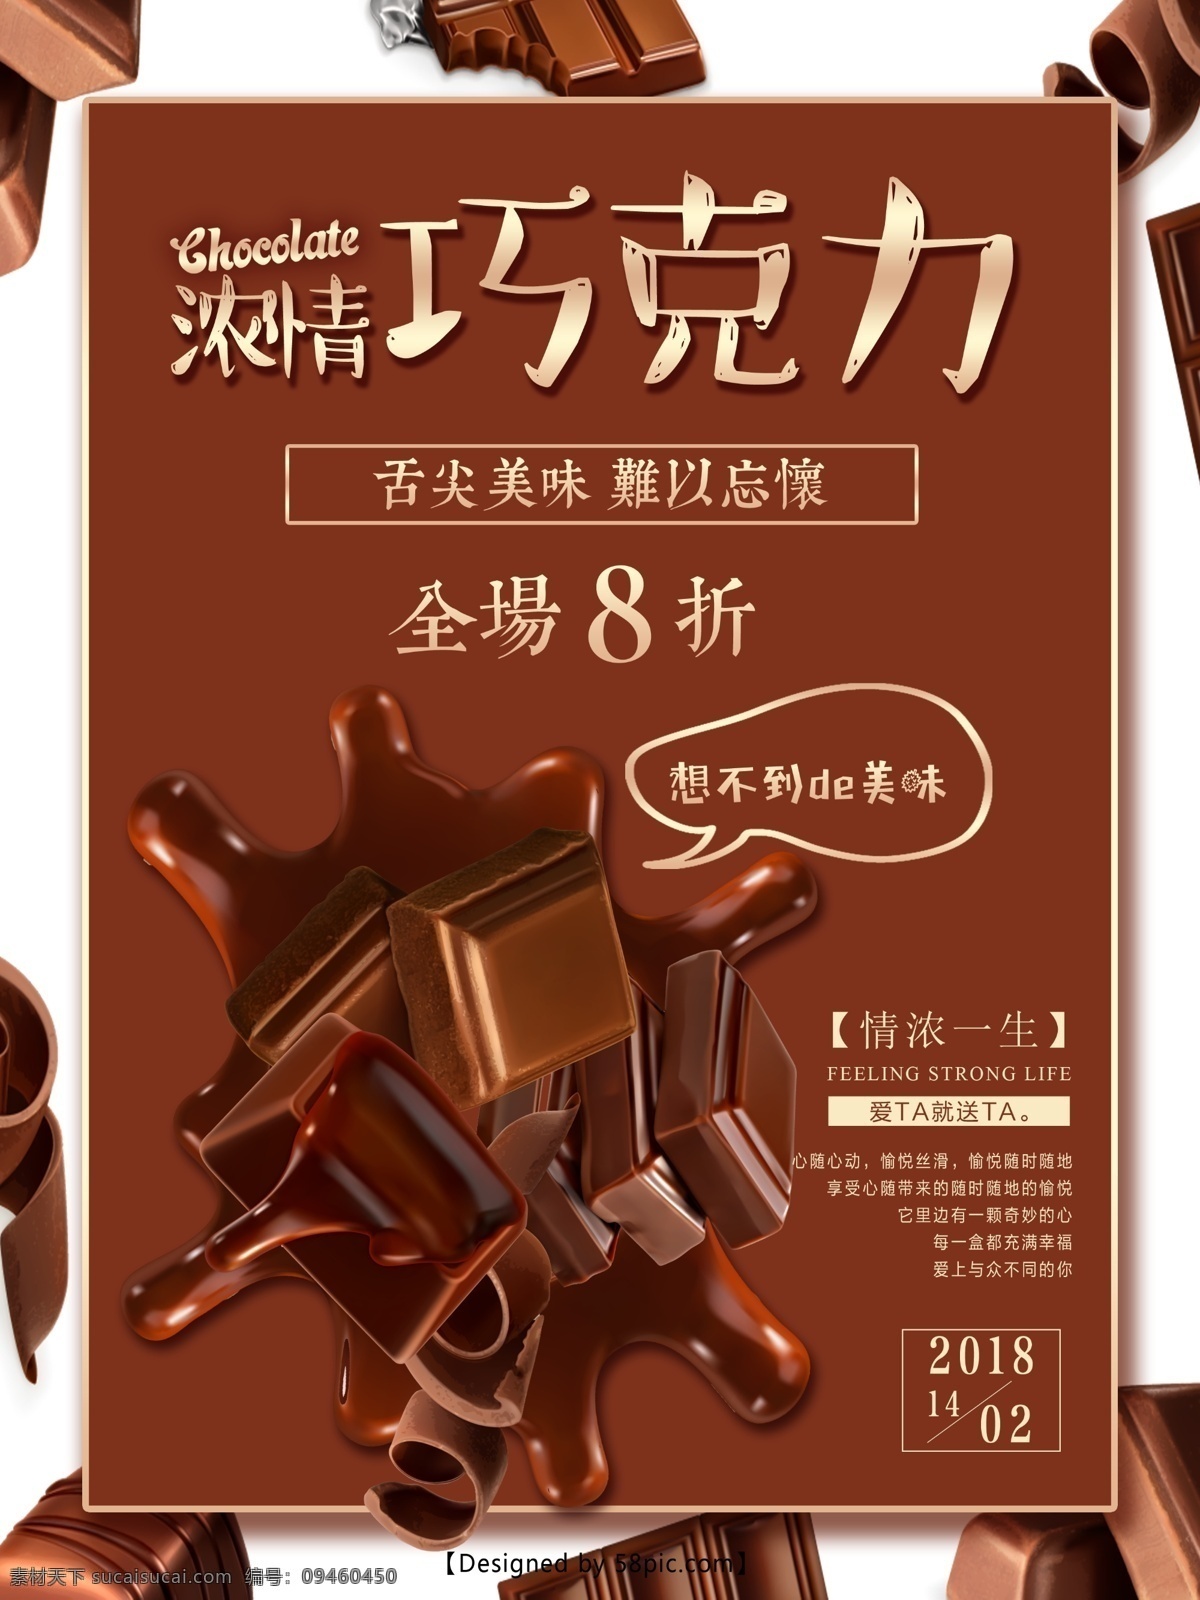 情人节 巧克力 美食 促销 海报 2.14 美食海报 浓情巧克力 巧克力促销 甜食